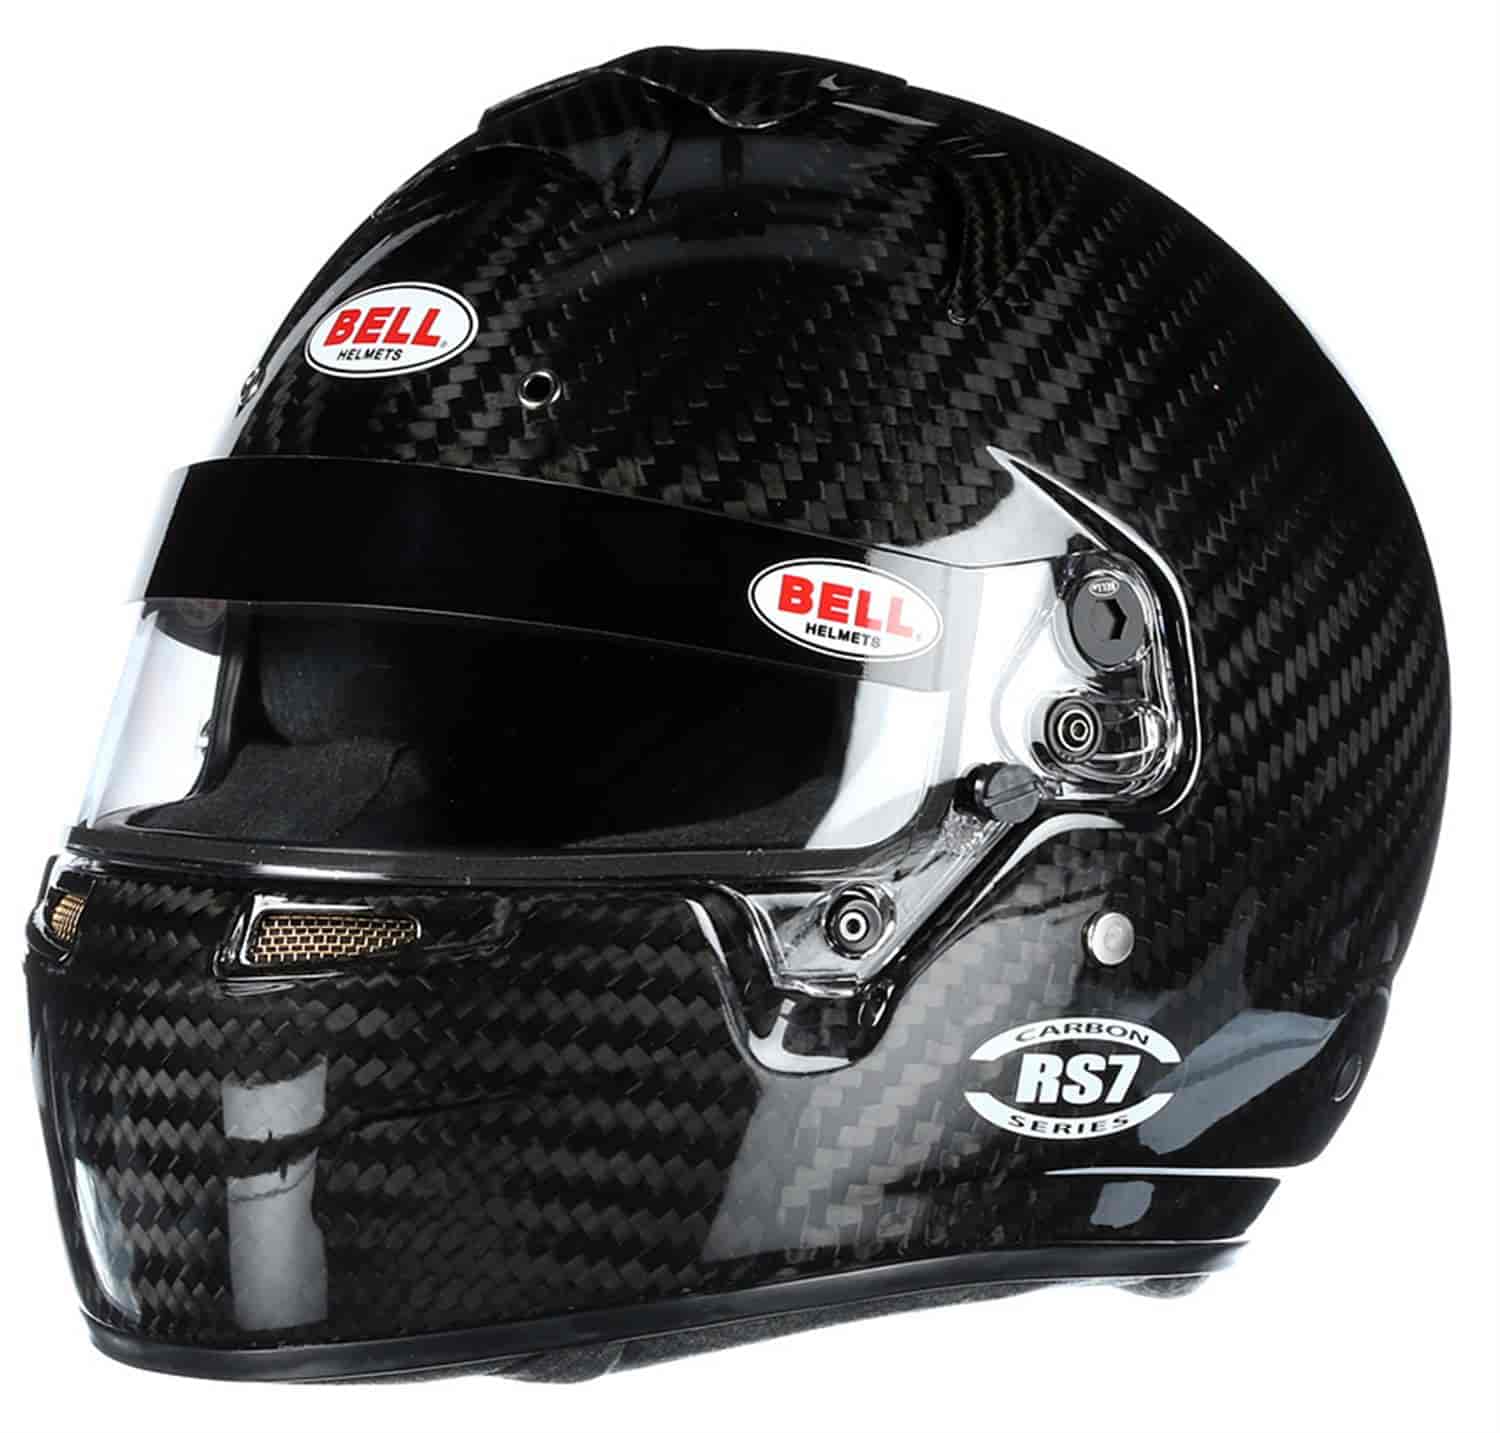 Bell RS7 Carbon Racing Helmets SA2020